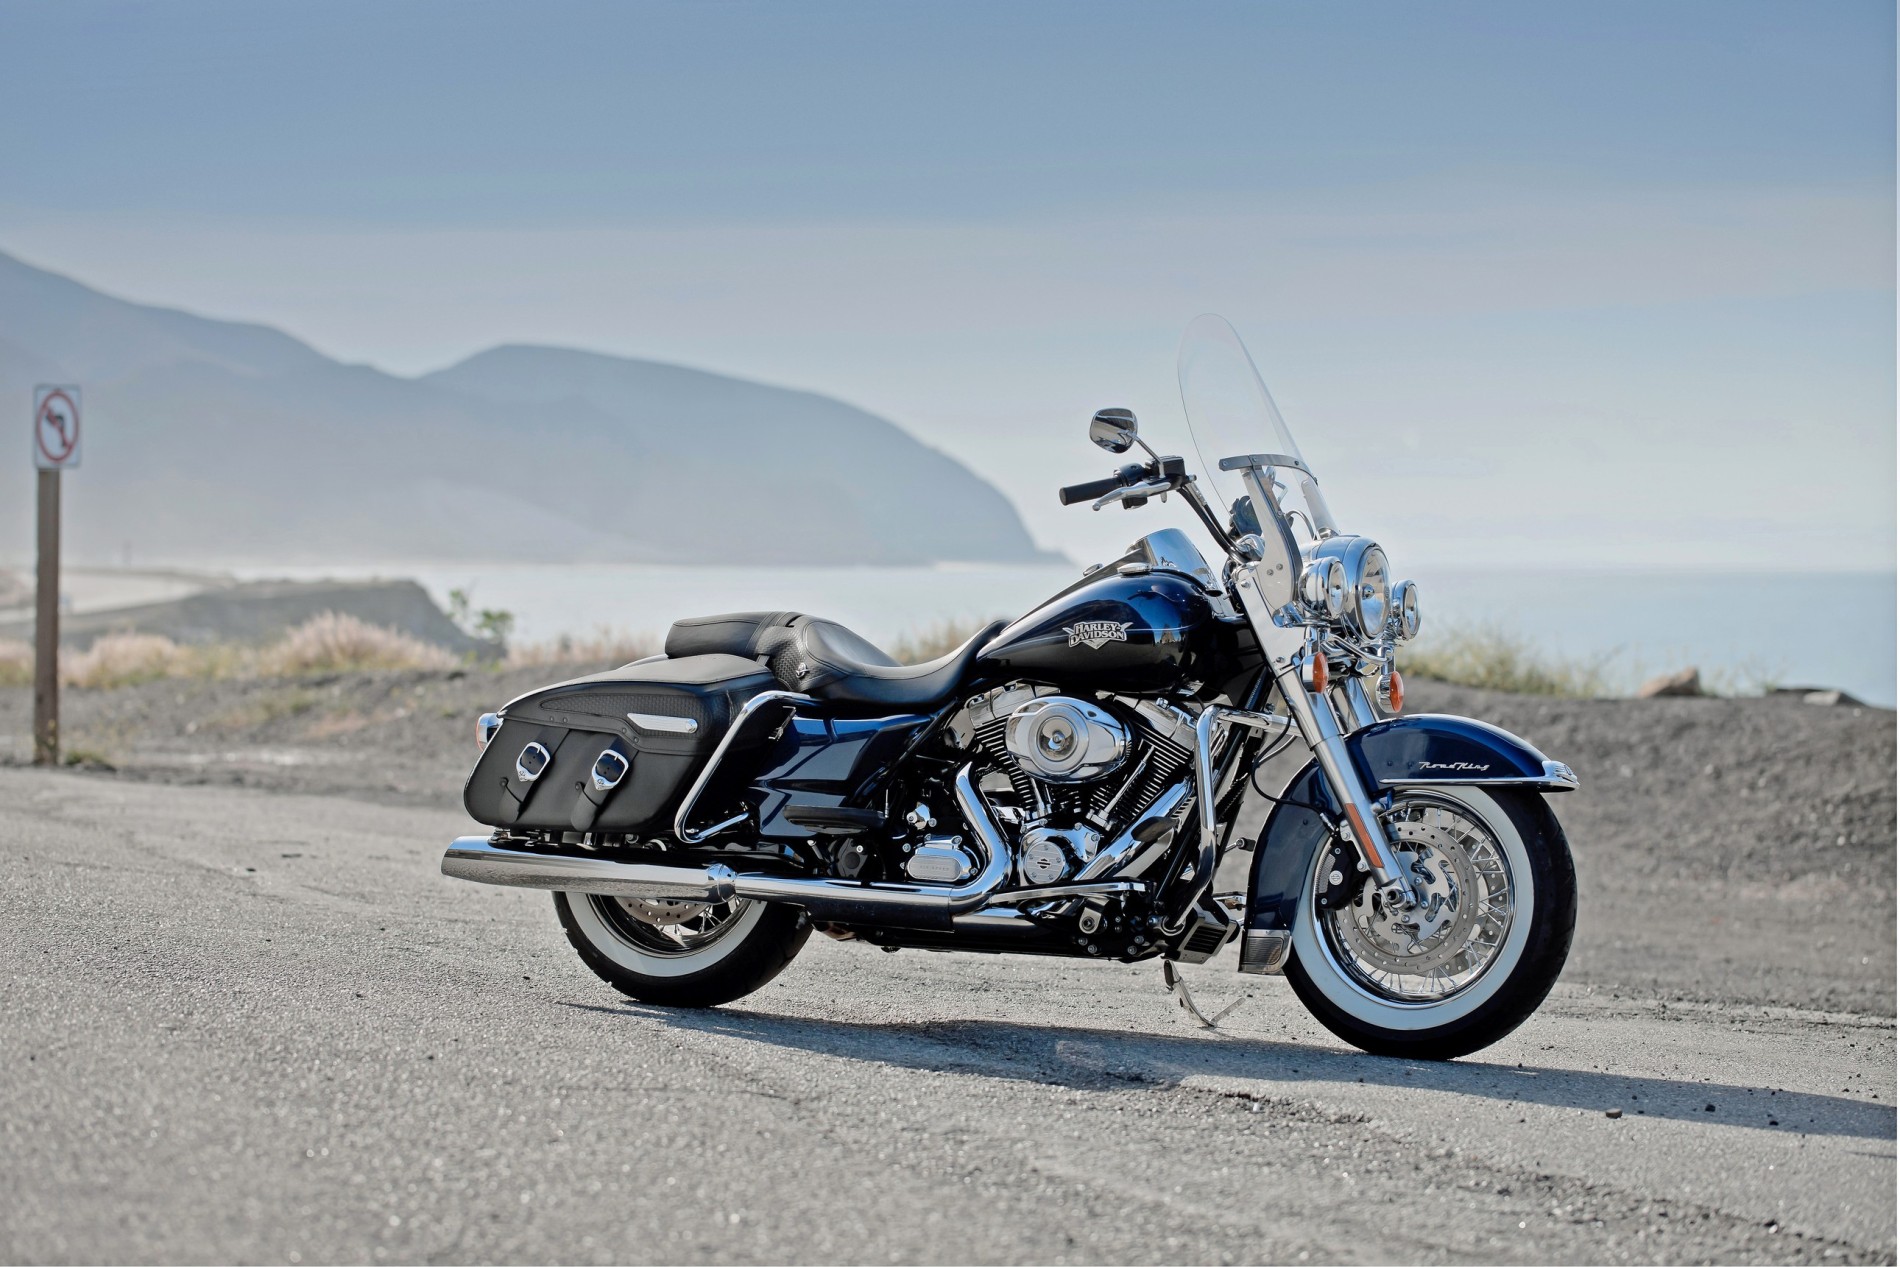 Harley Davidson finanzierung online